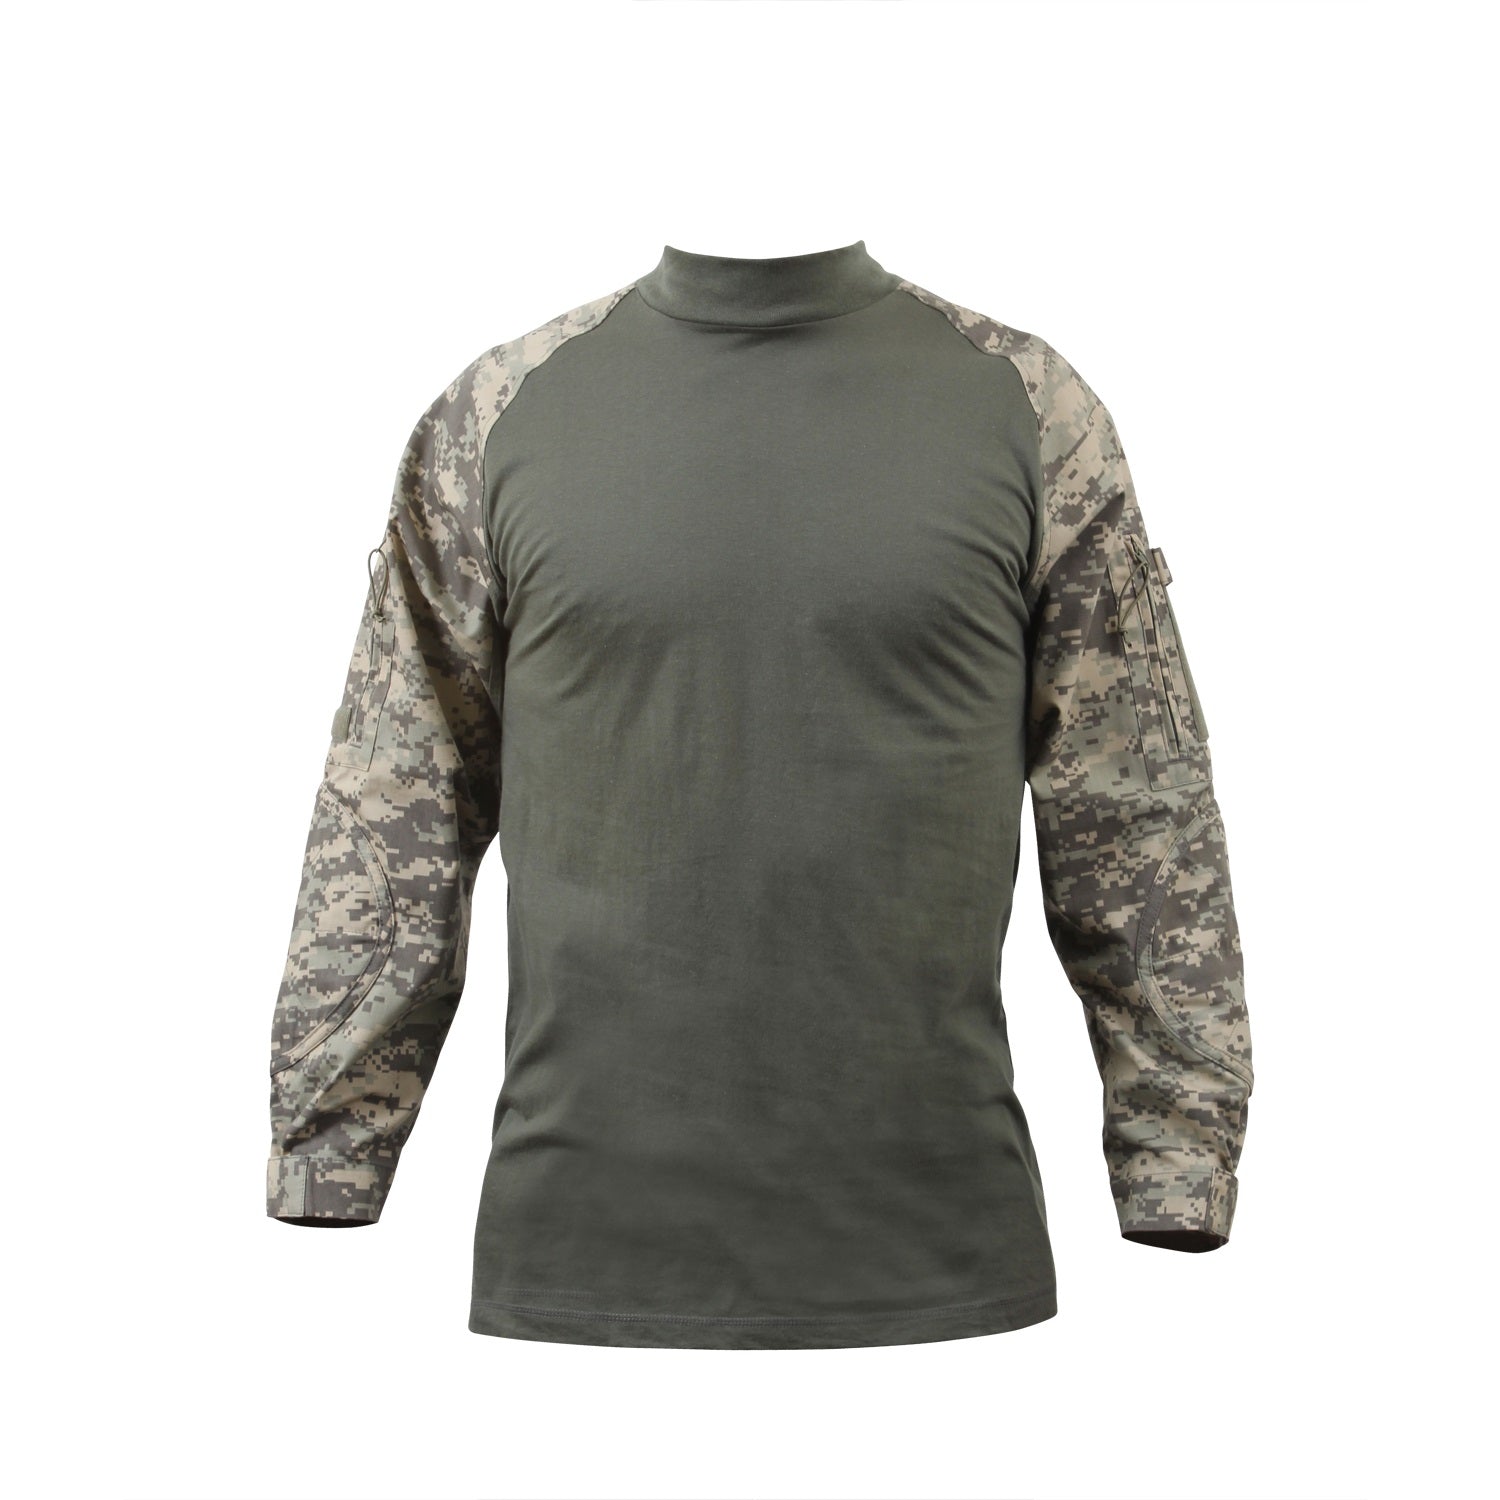 Rothco Military NYCO FR Fire Retardant Combat Shirt ACU Camo